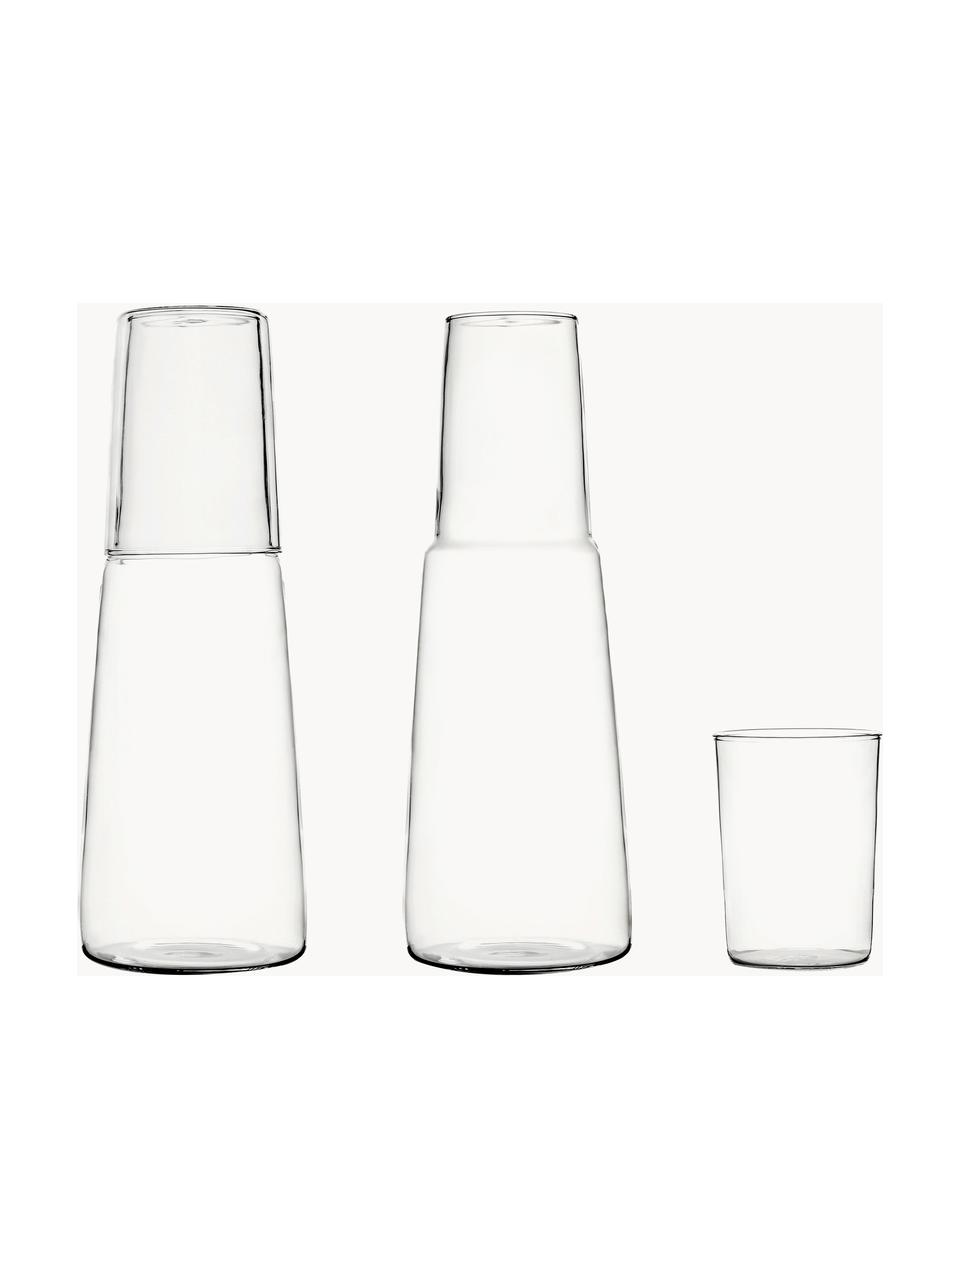 Handgemaakte waterkaraf en waterglas Torre, set van 2, Borosilicaatglas, Transparant, Set met verschillende formaten